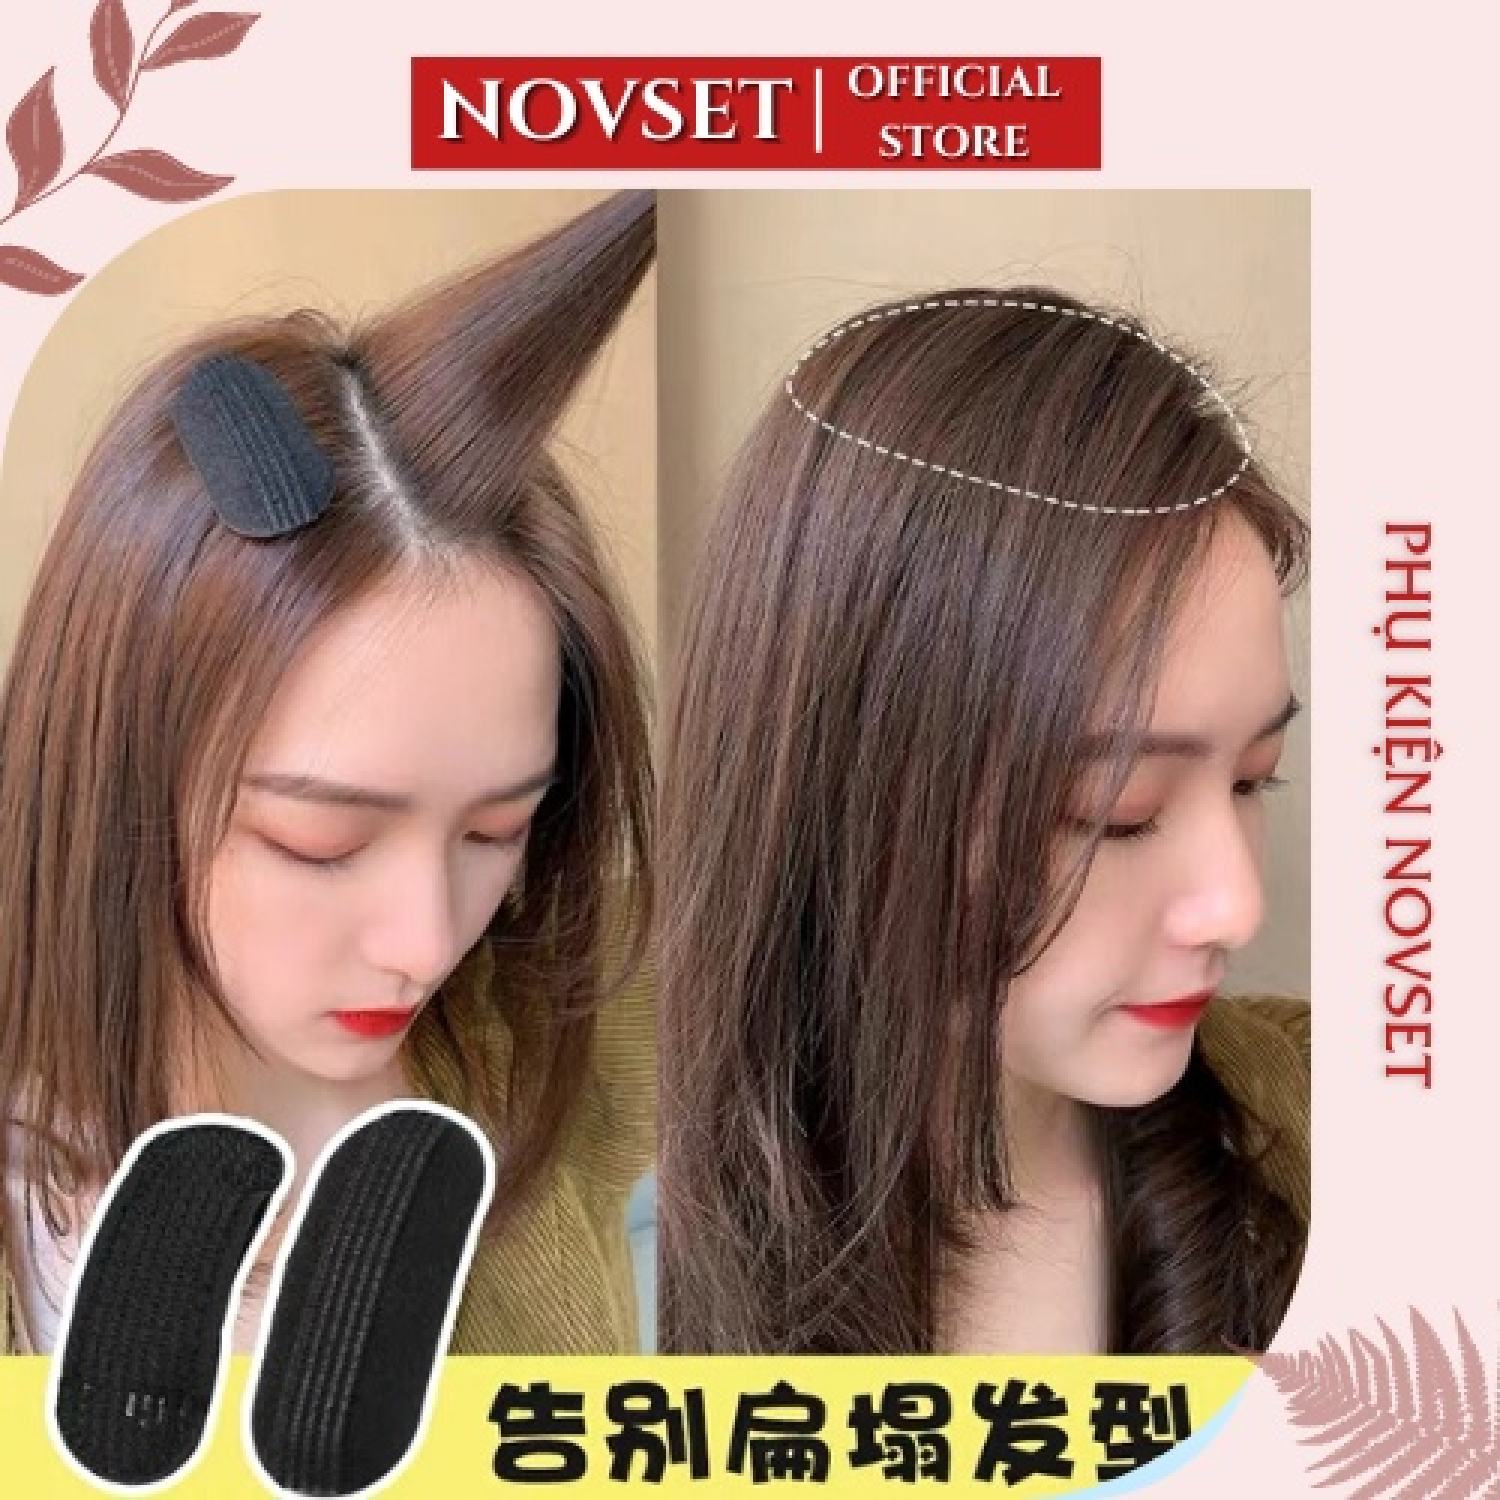 Người bán hàng giỏi nhất Kẹp tóc mái có đệm xốp làm phồng tóc bồng bềnh  thời trang phong cách Hàn Quốc cho nữ  Shopee Việt Nam